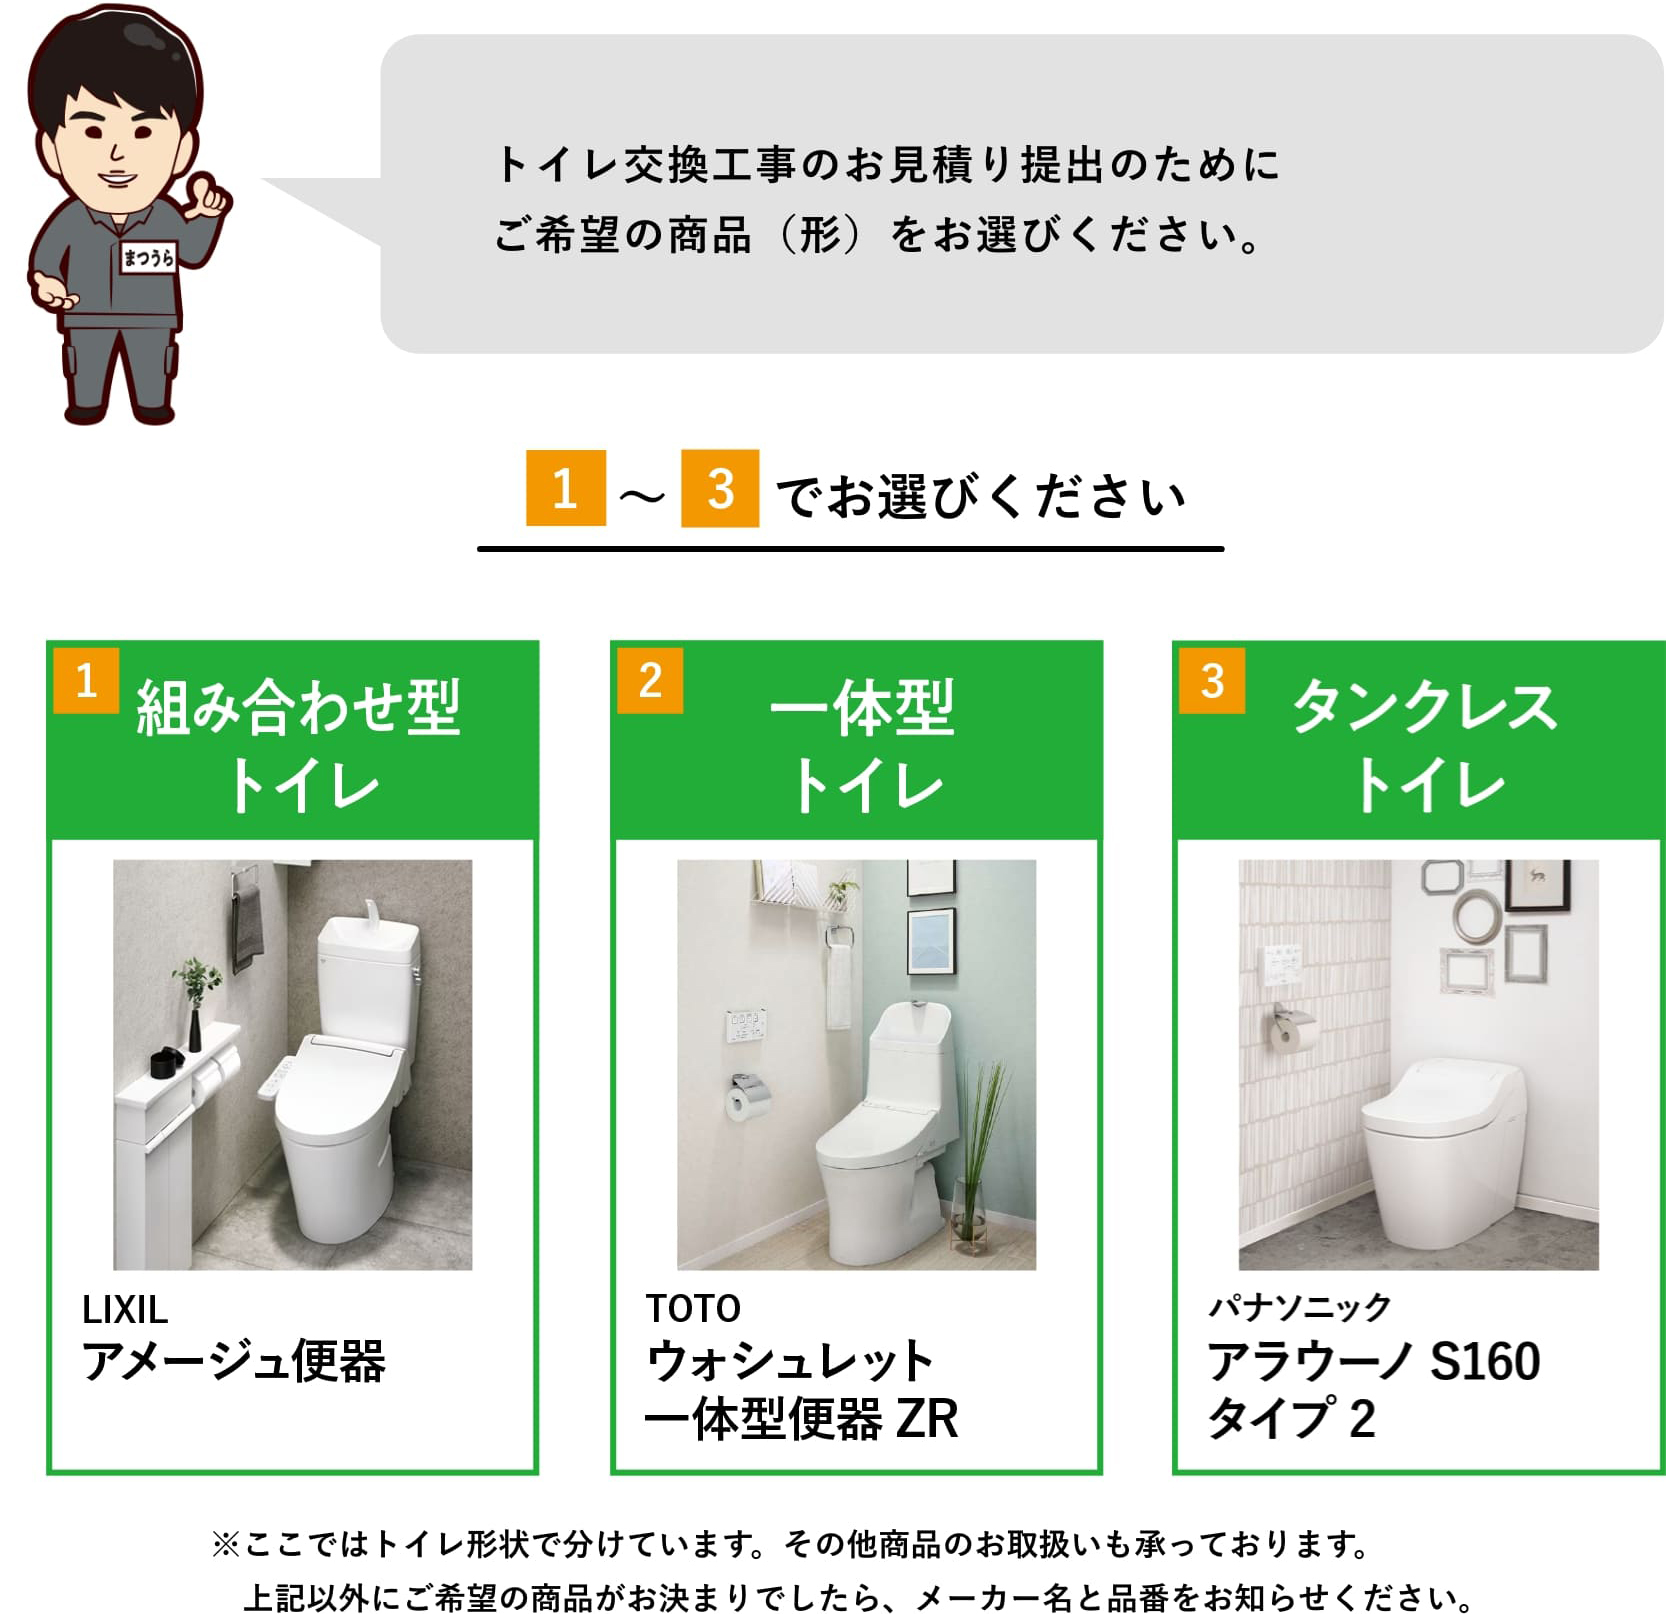 トイレ交換工事のお見積り提出のためにご希望の商品（形）をお選びください。